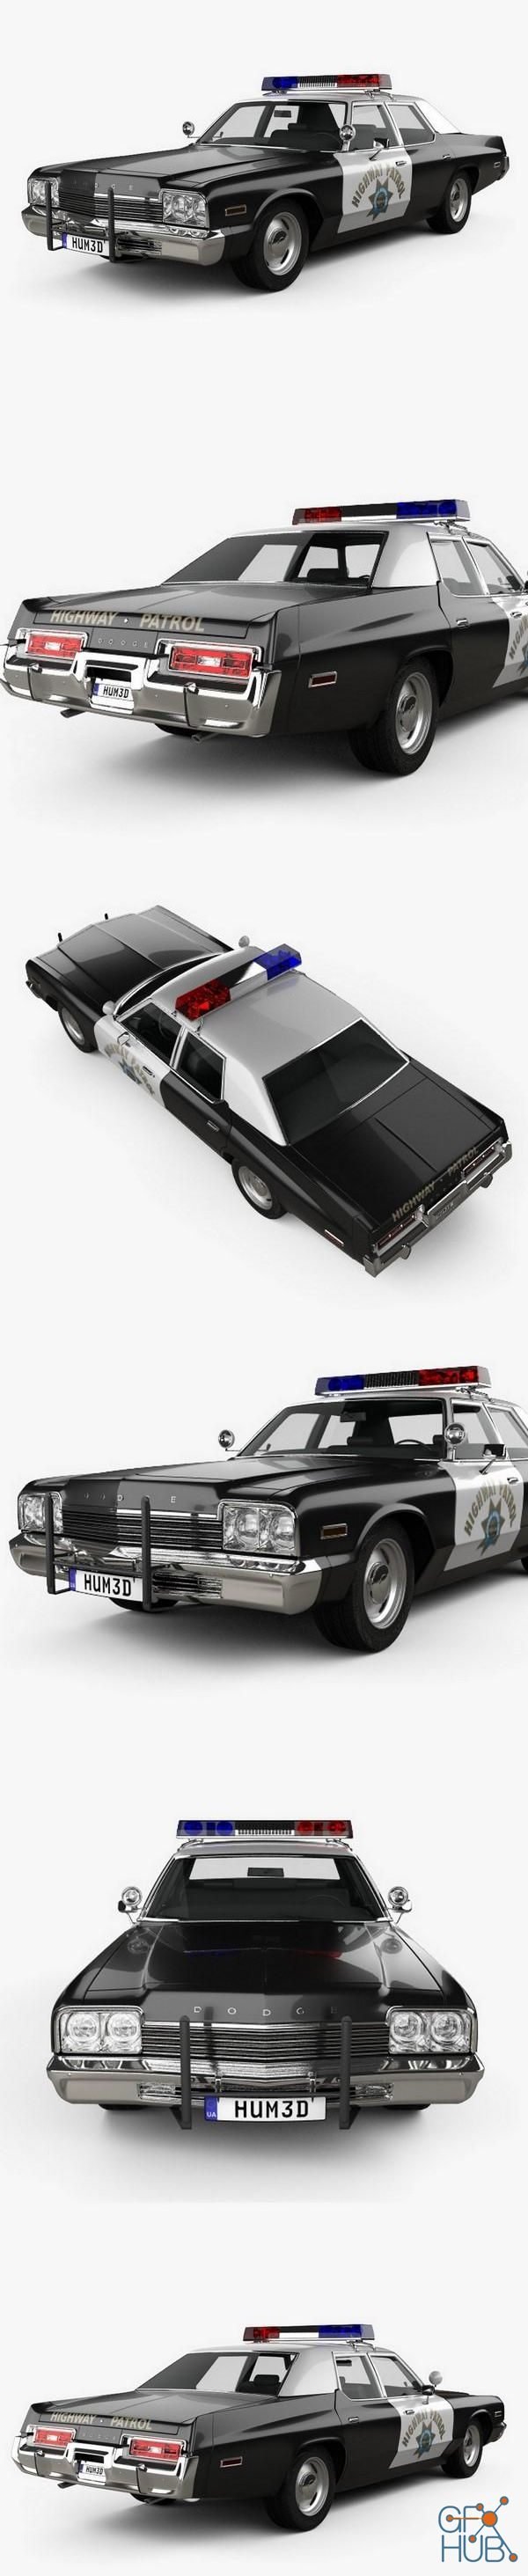 Dodge Monaco Police 1974 car